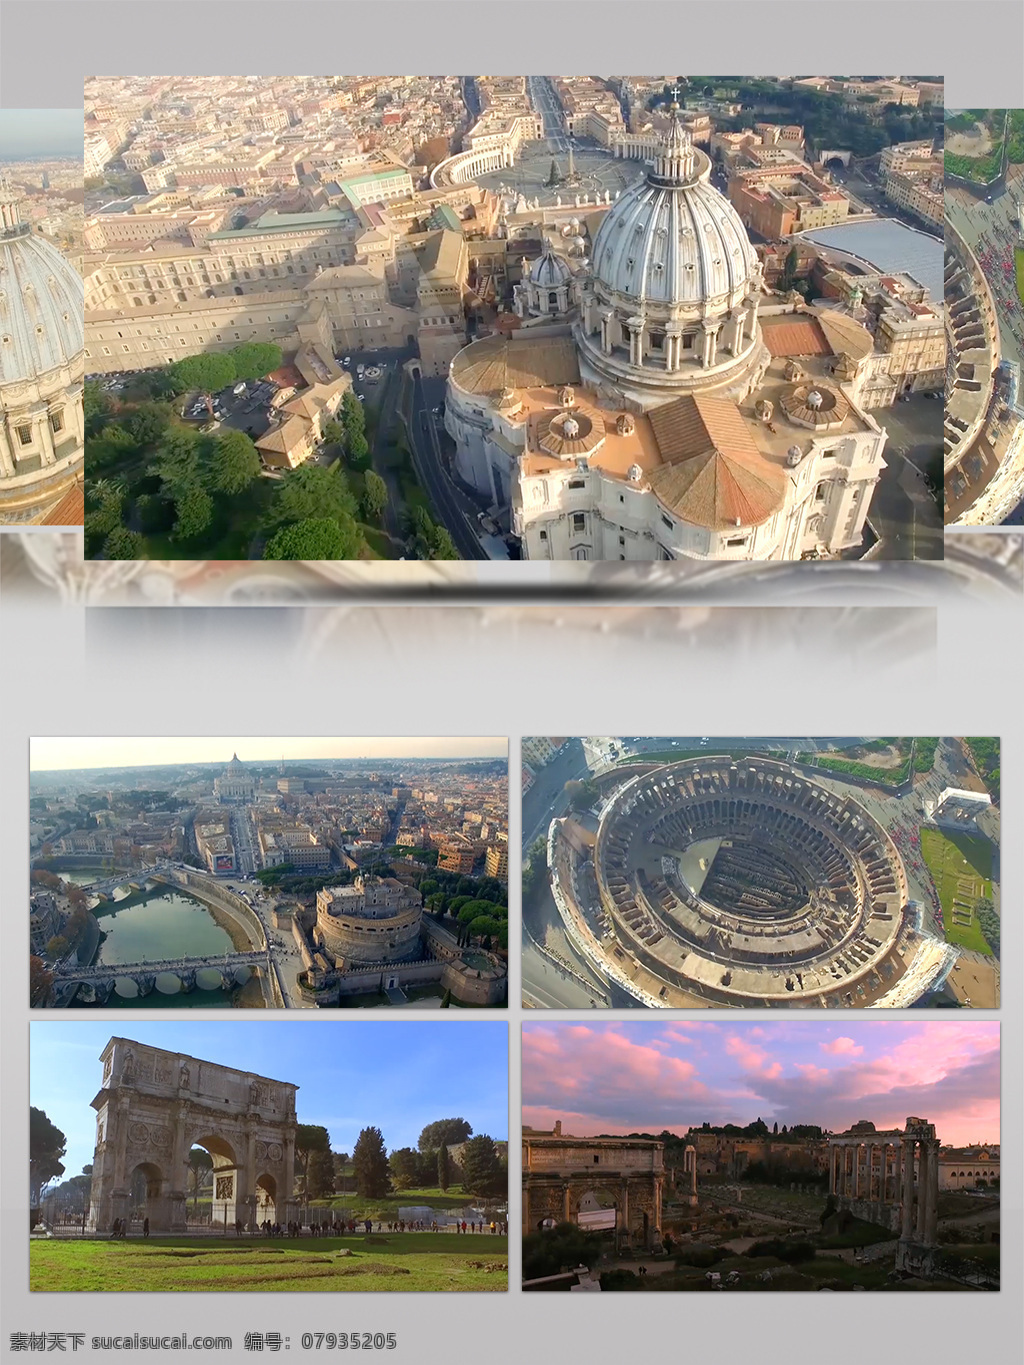 罗马城 市 景观 无人机 高清 鸟瞰图 2018年 城市景观 高清实拍 国外风情 纪录片 景点 旅游城市 罗马 实拍视频 实拍素材 外国风光